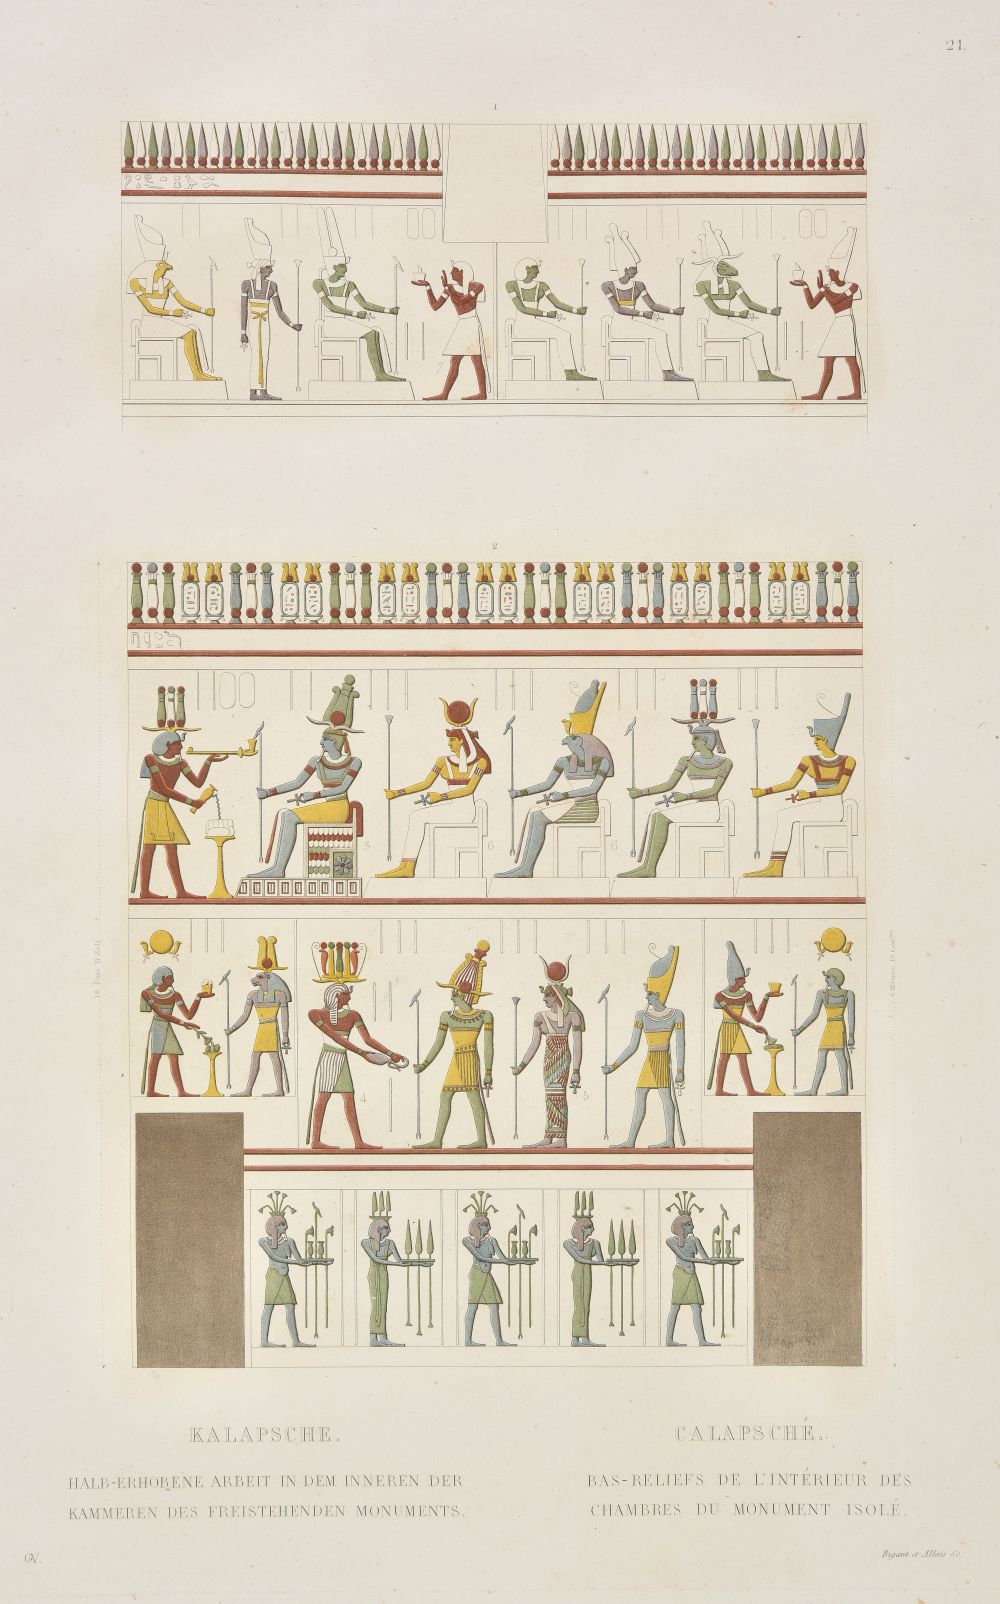 Gau (Francois Chretien). Antiquities de la Nubie, ou monumens inedits des bords du Nil, 1822